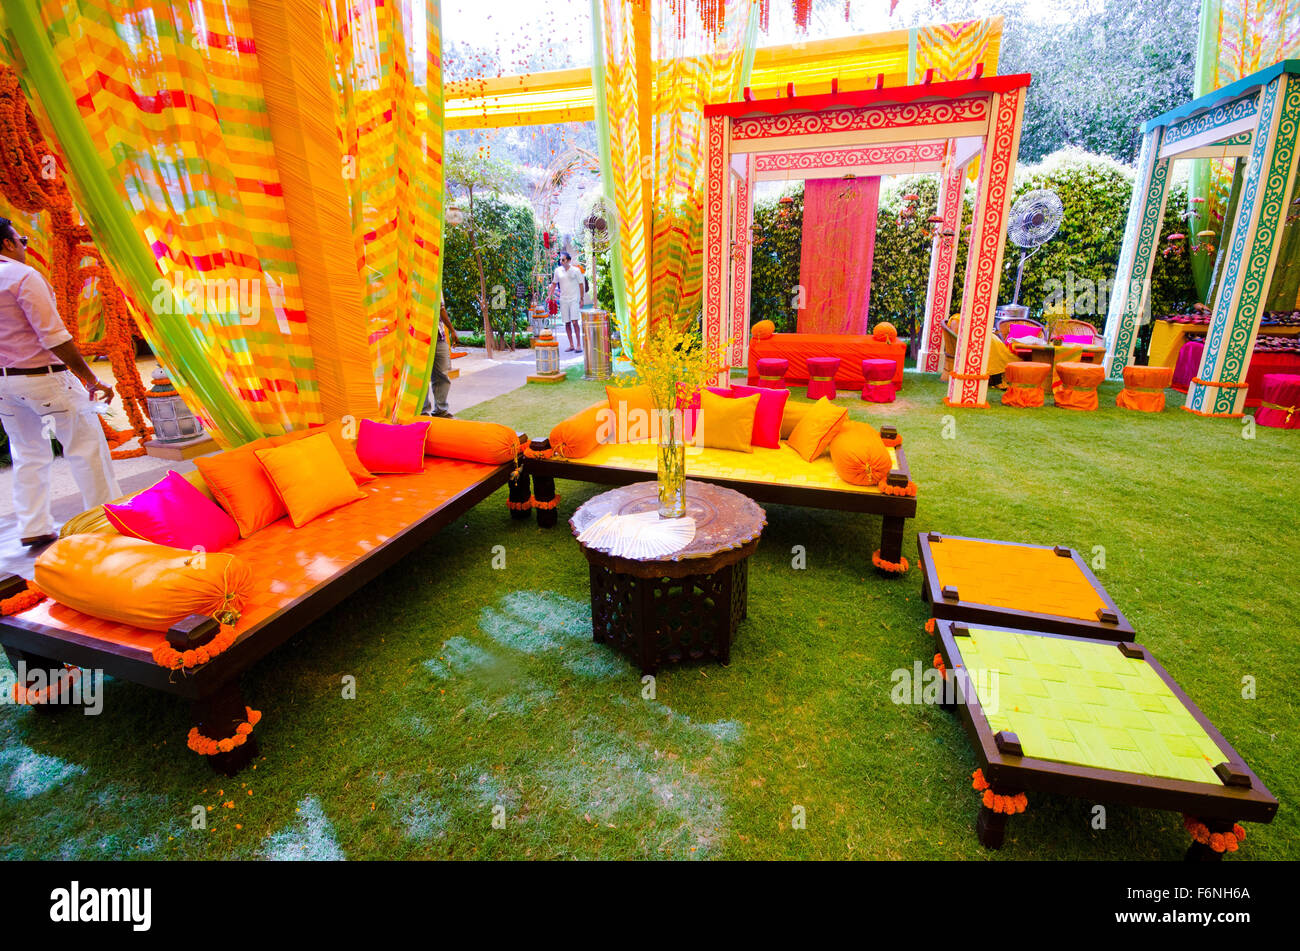 Matrimonio sala decorata, Jodhpur, Rajasthan, India, Asia Foto Stock